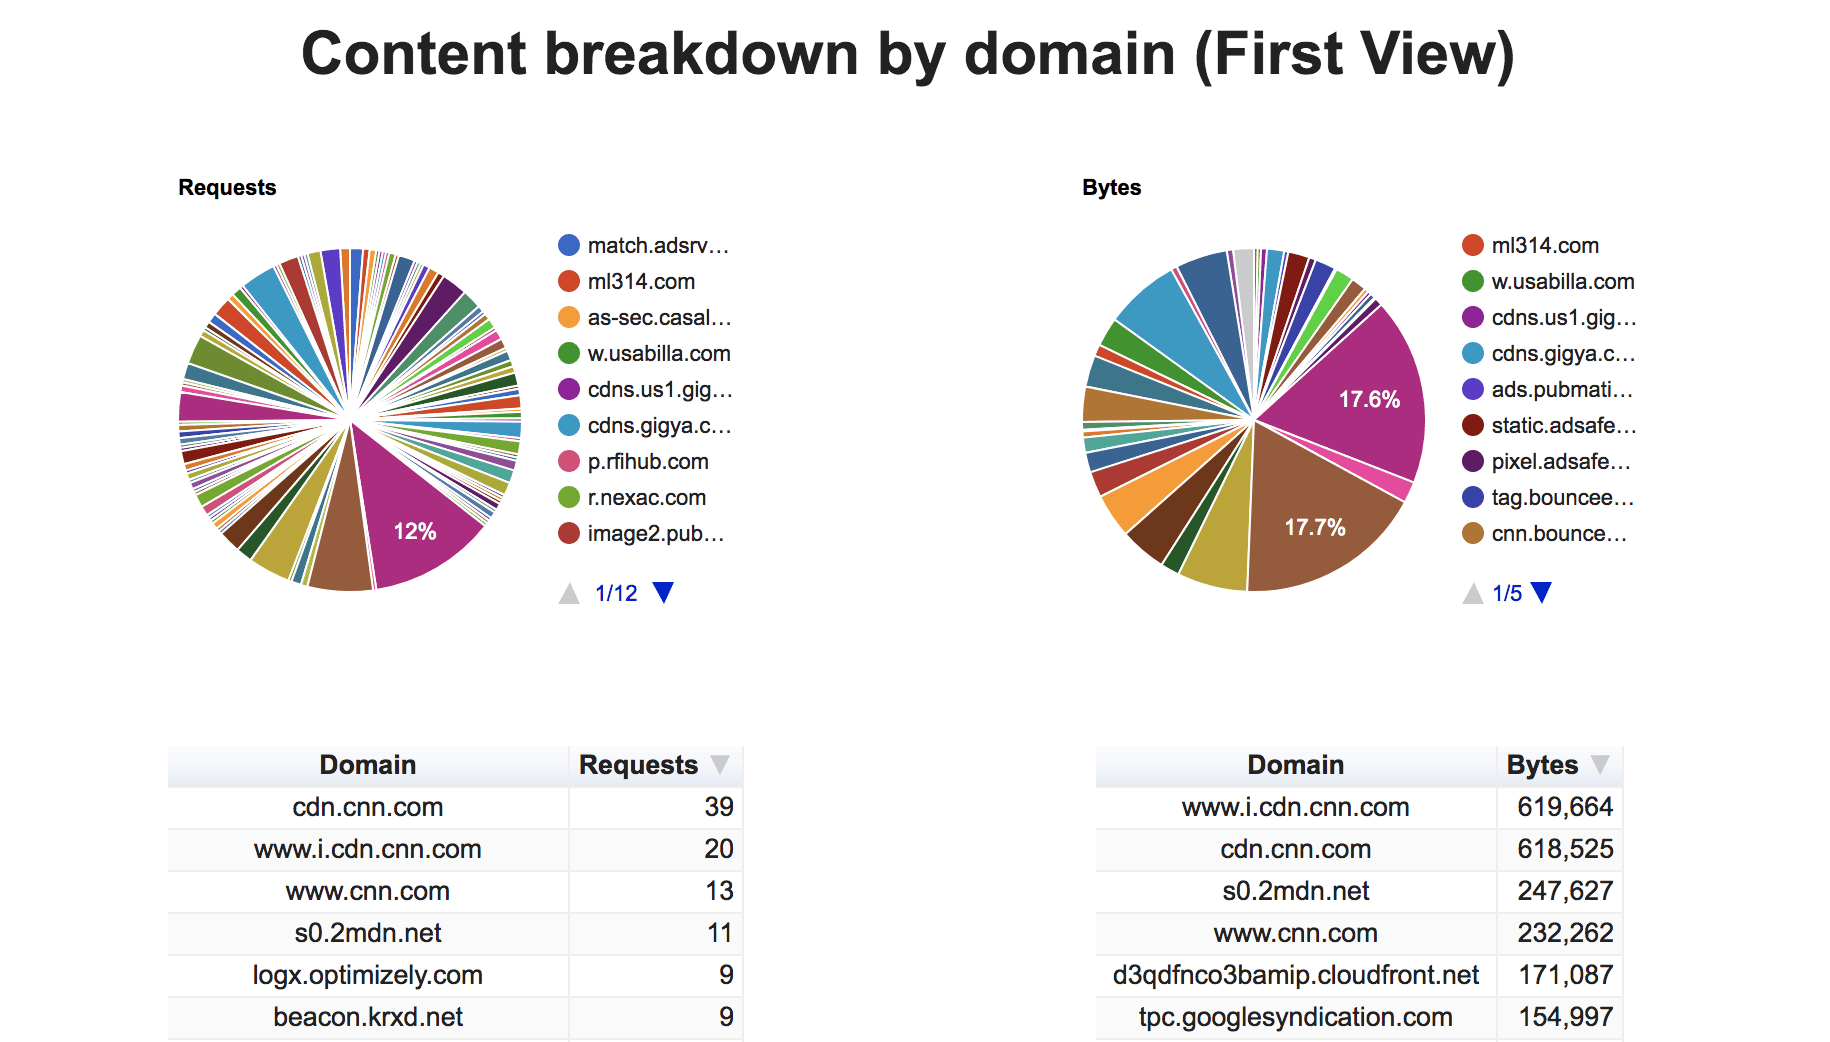 suddivisione dei contenuti per dominio (prima visualizzazione).
Mostra la percentuale di richieste e byte per ogni terza parte